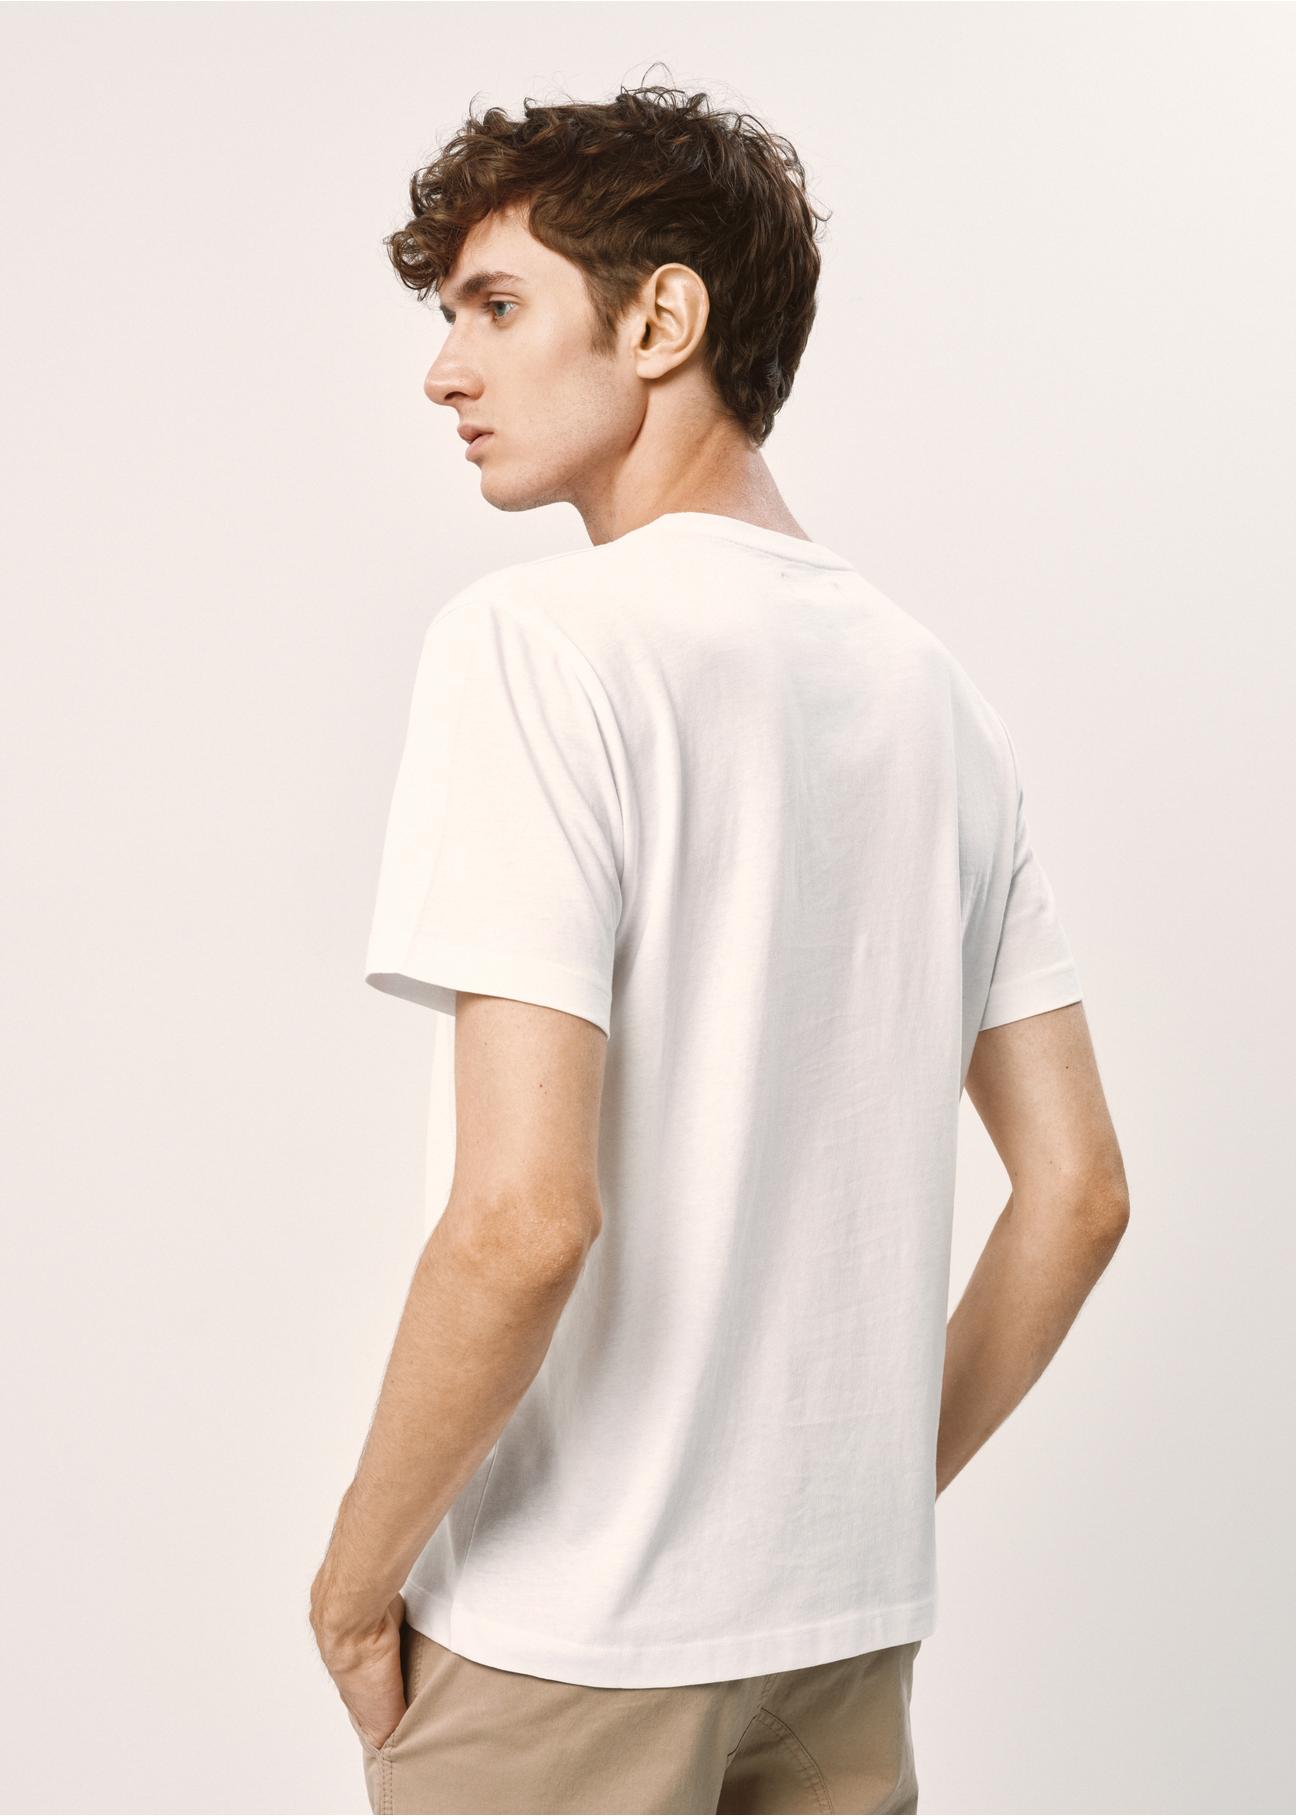 Biały basic T-shirt męski TSHMT-0097-11(W24)